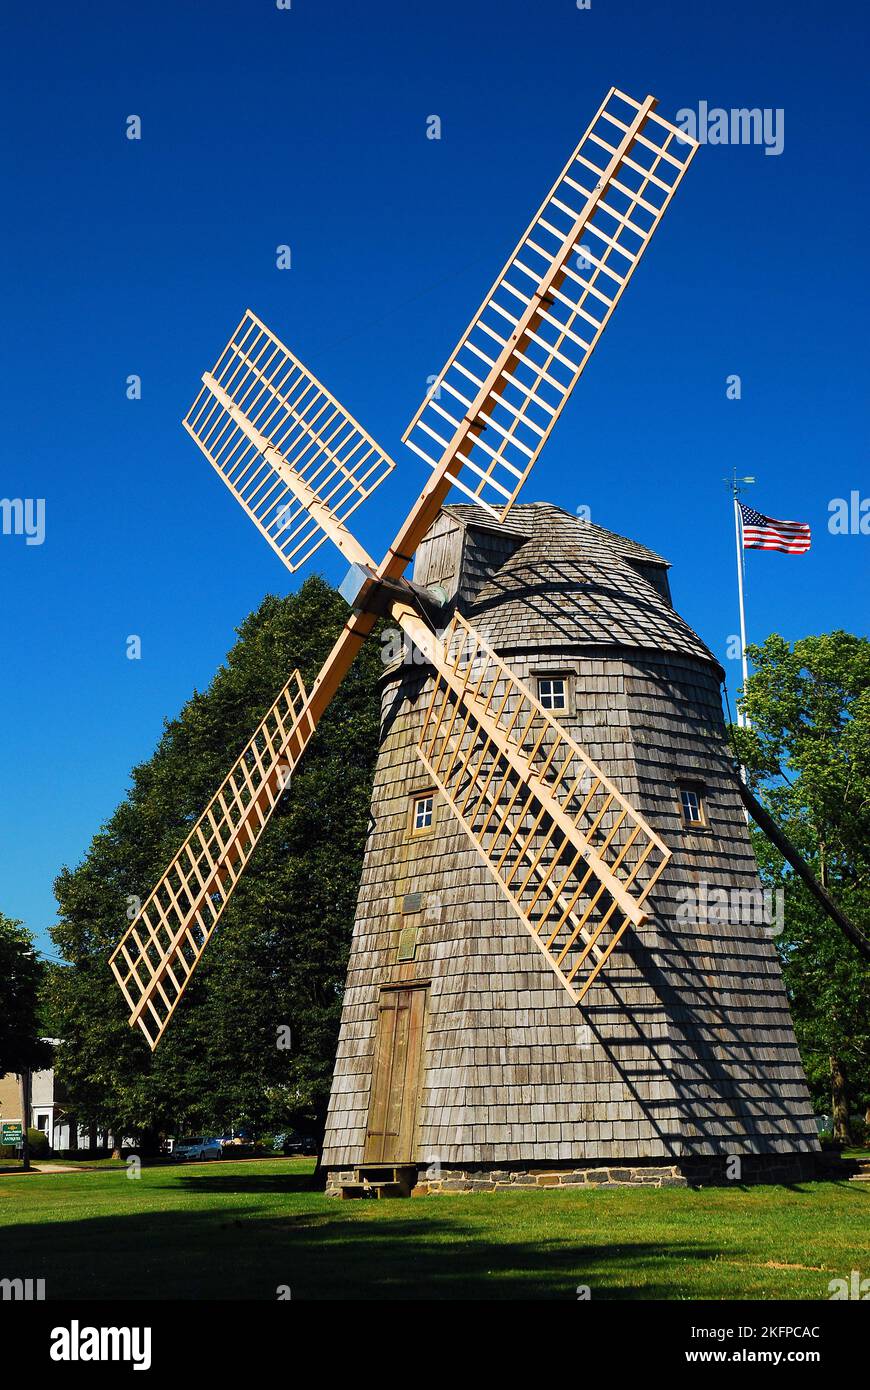 Die Water Mill Windmill in East Hampton, Long Island, erinnert an die Landwirtschaft und Farmen der Hamptons, bevor sie zu einem Sommerort wurde Stockfoto